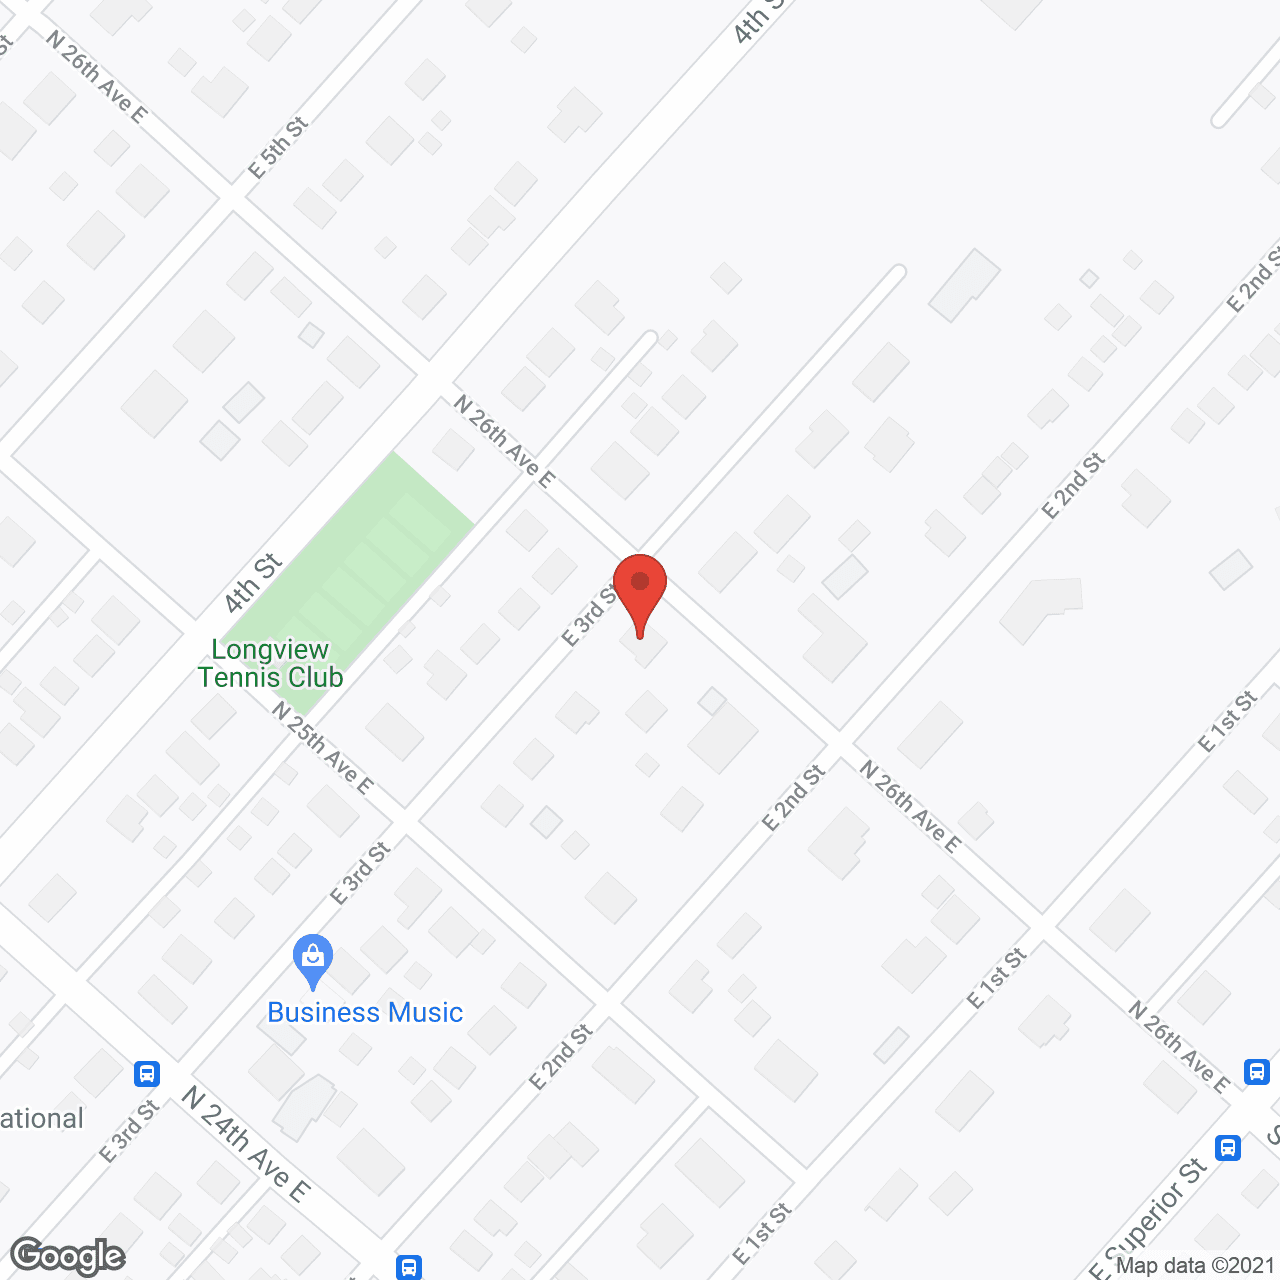 Longview House in google map